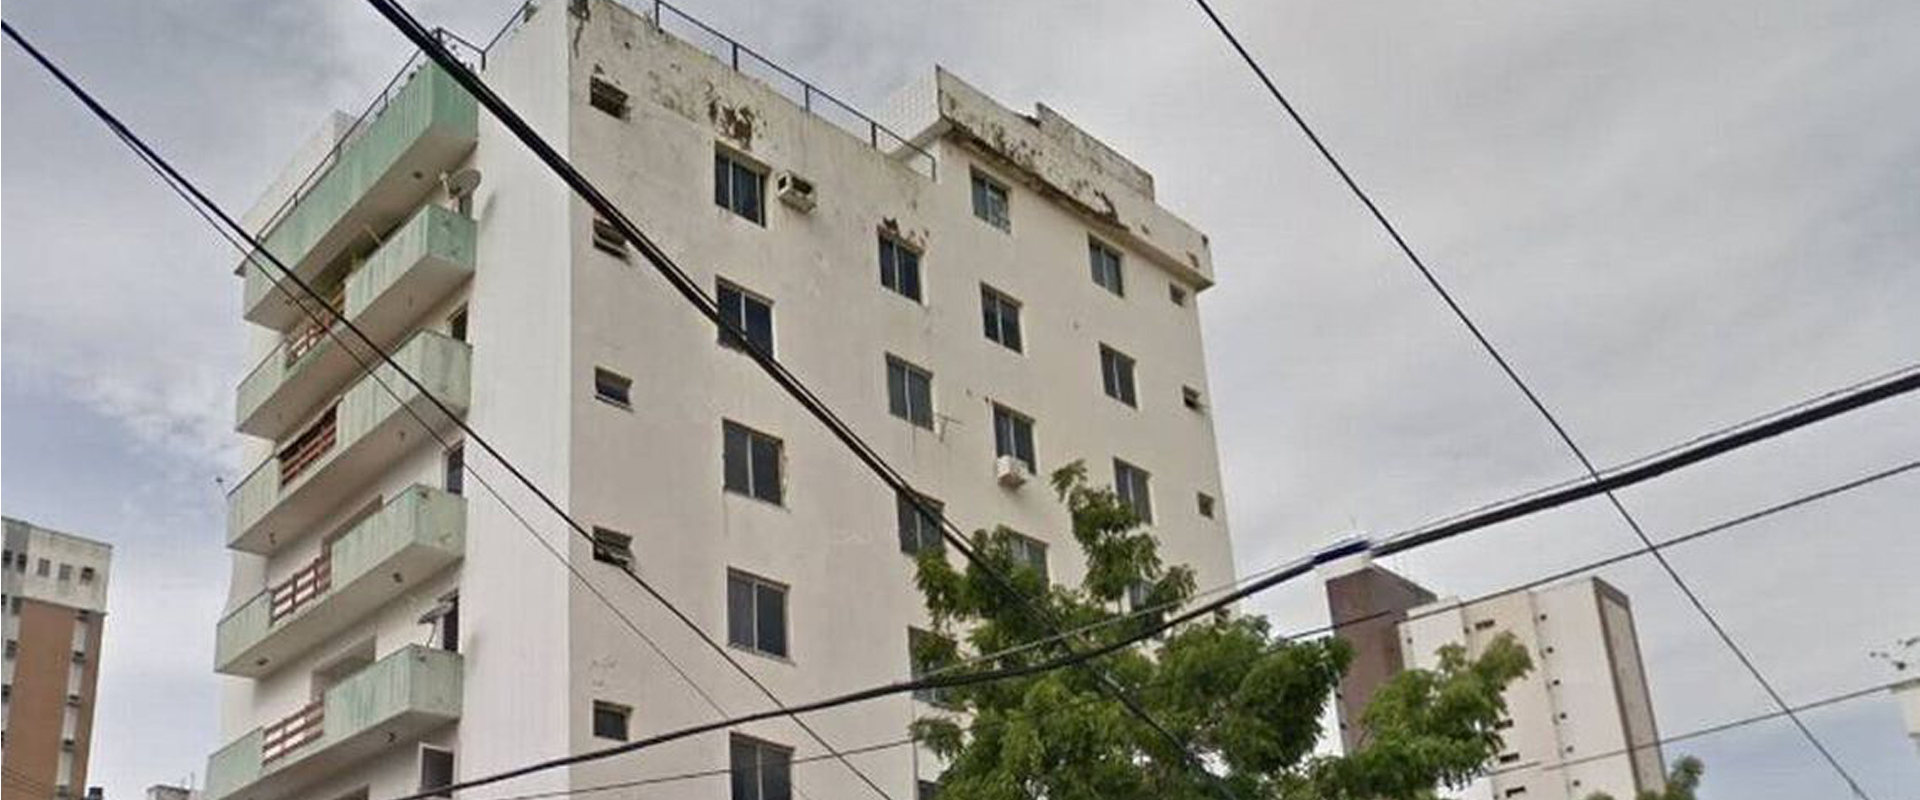 Após desabamento de prédio em Fortaleza, FNA faz alerta